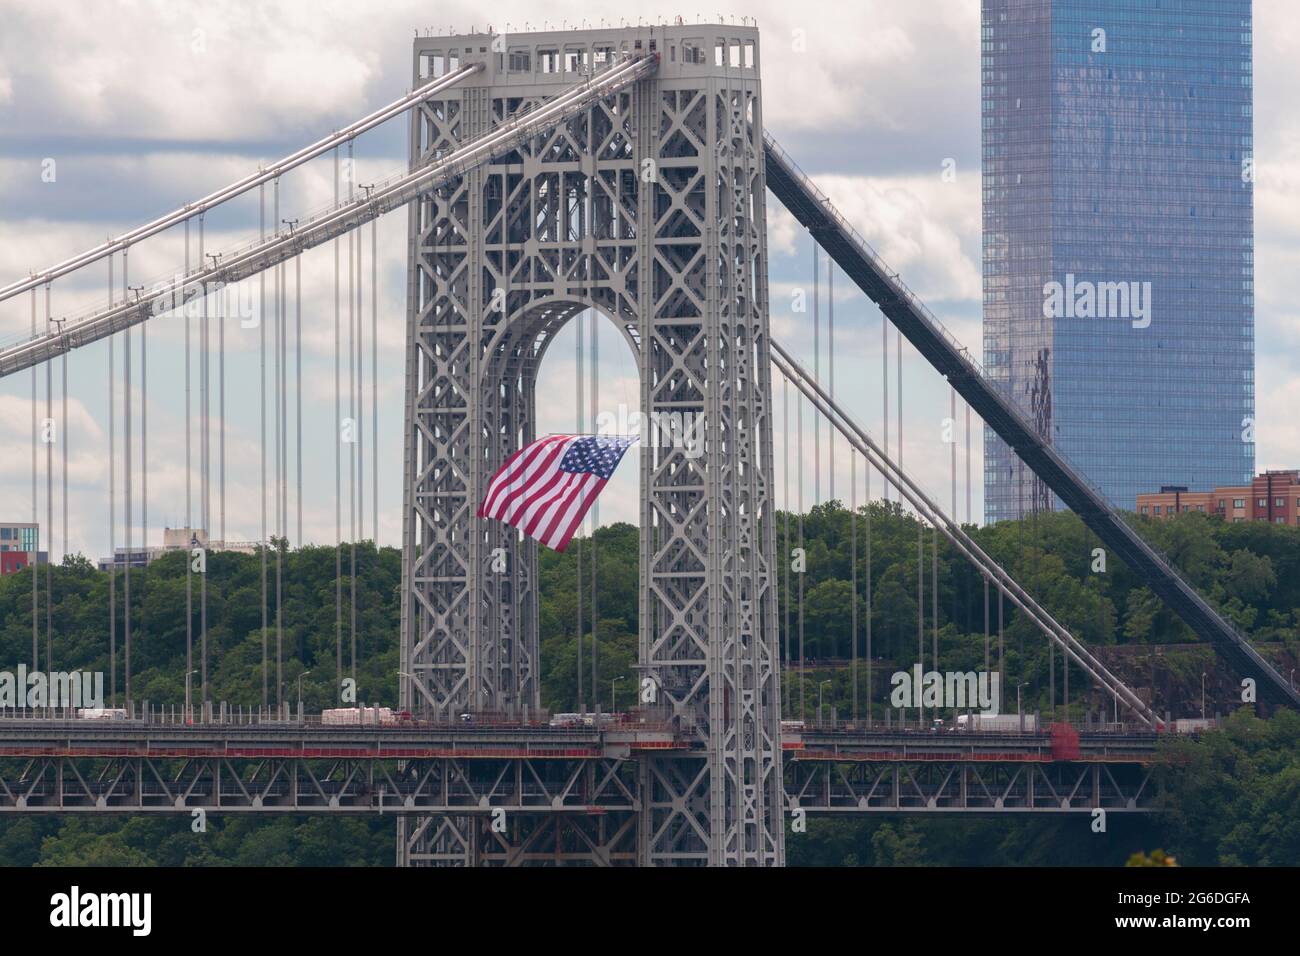 Una bandiera americana pende dalla torre di sospensione laterale del New Jersey del George Washington Bridge, un ponte sospeso a due piani che collega Manhattan Foto Stock